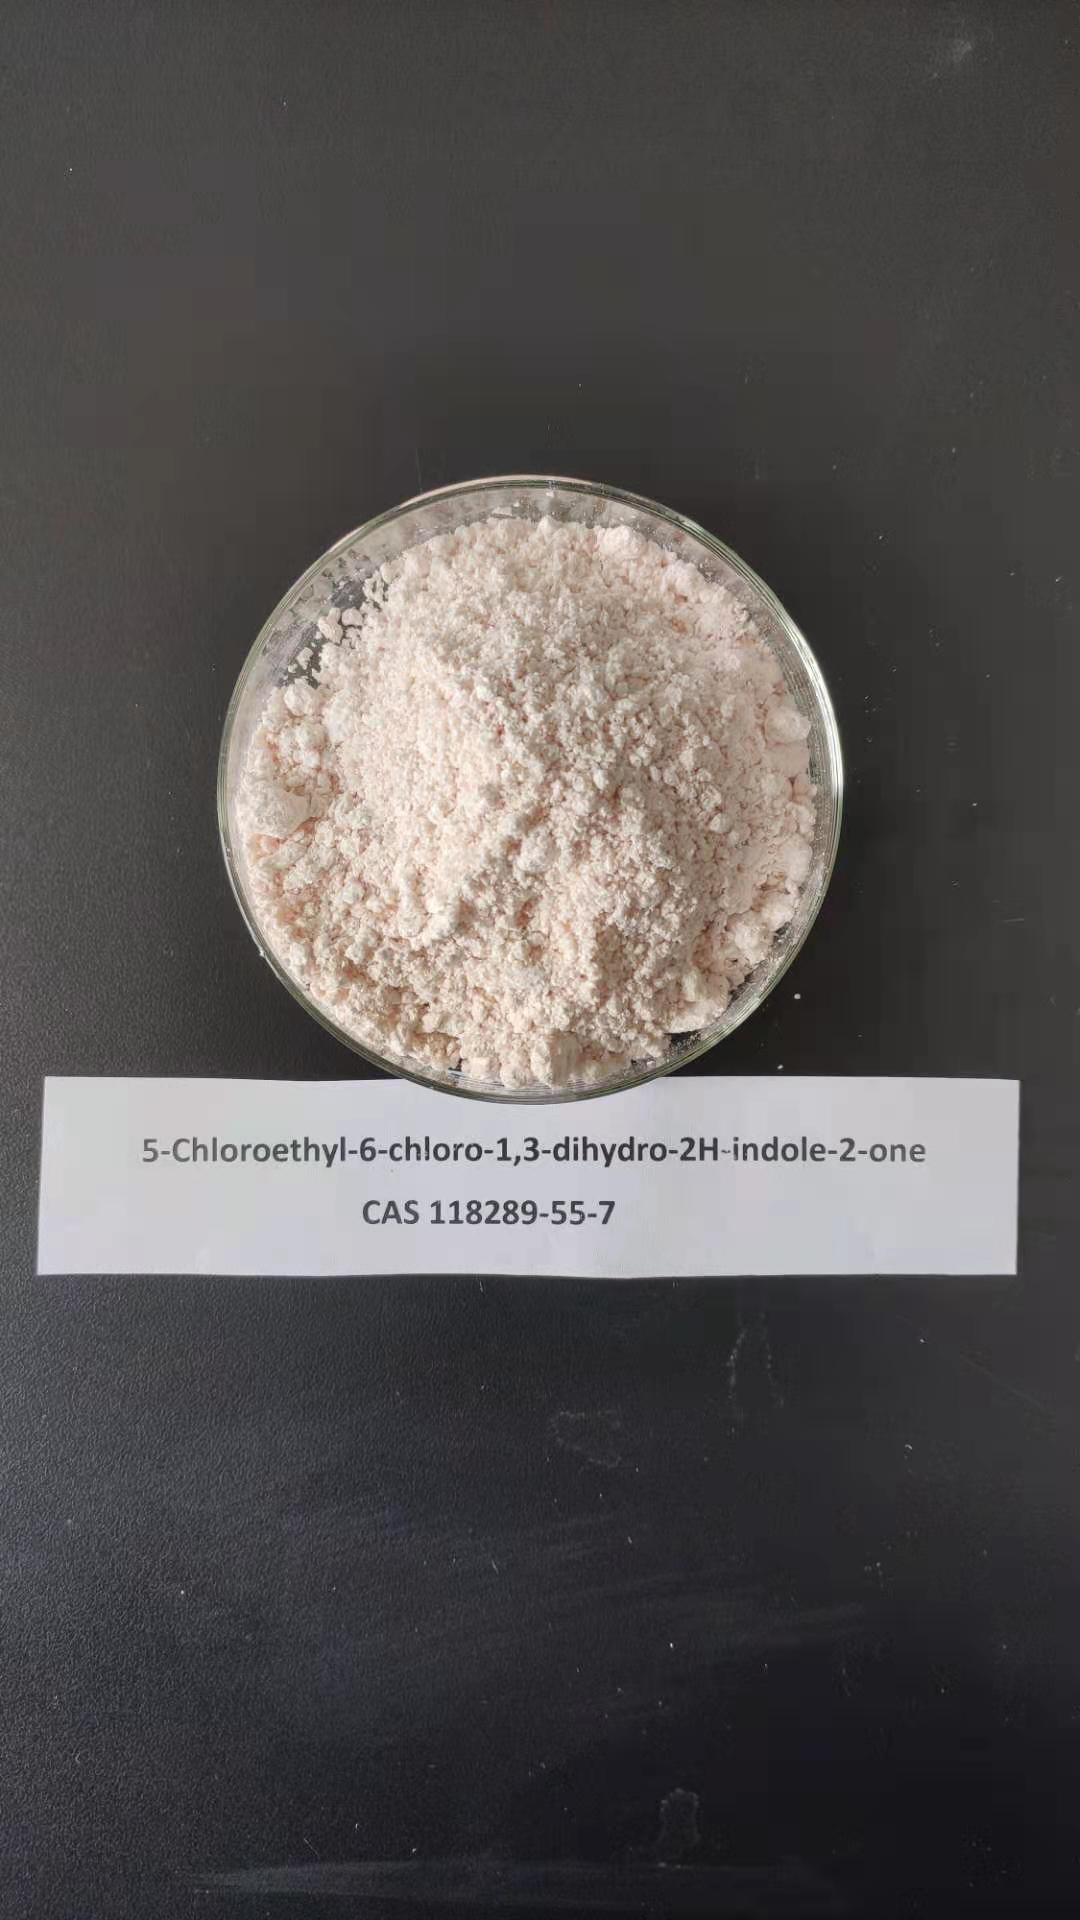 5-Chloroethyl-6-chloro-1,3-dihydro-2H-indole-2-one,CAS 118289-55-7